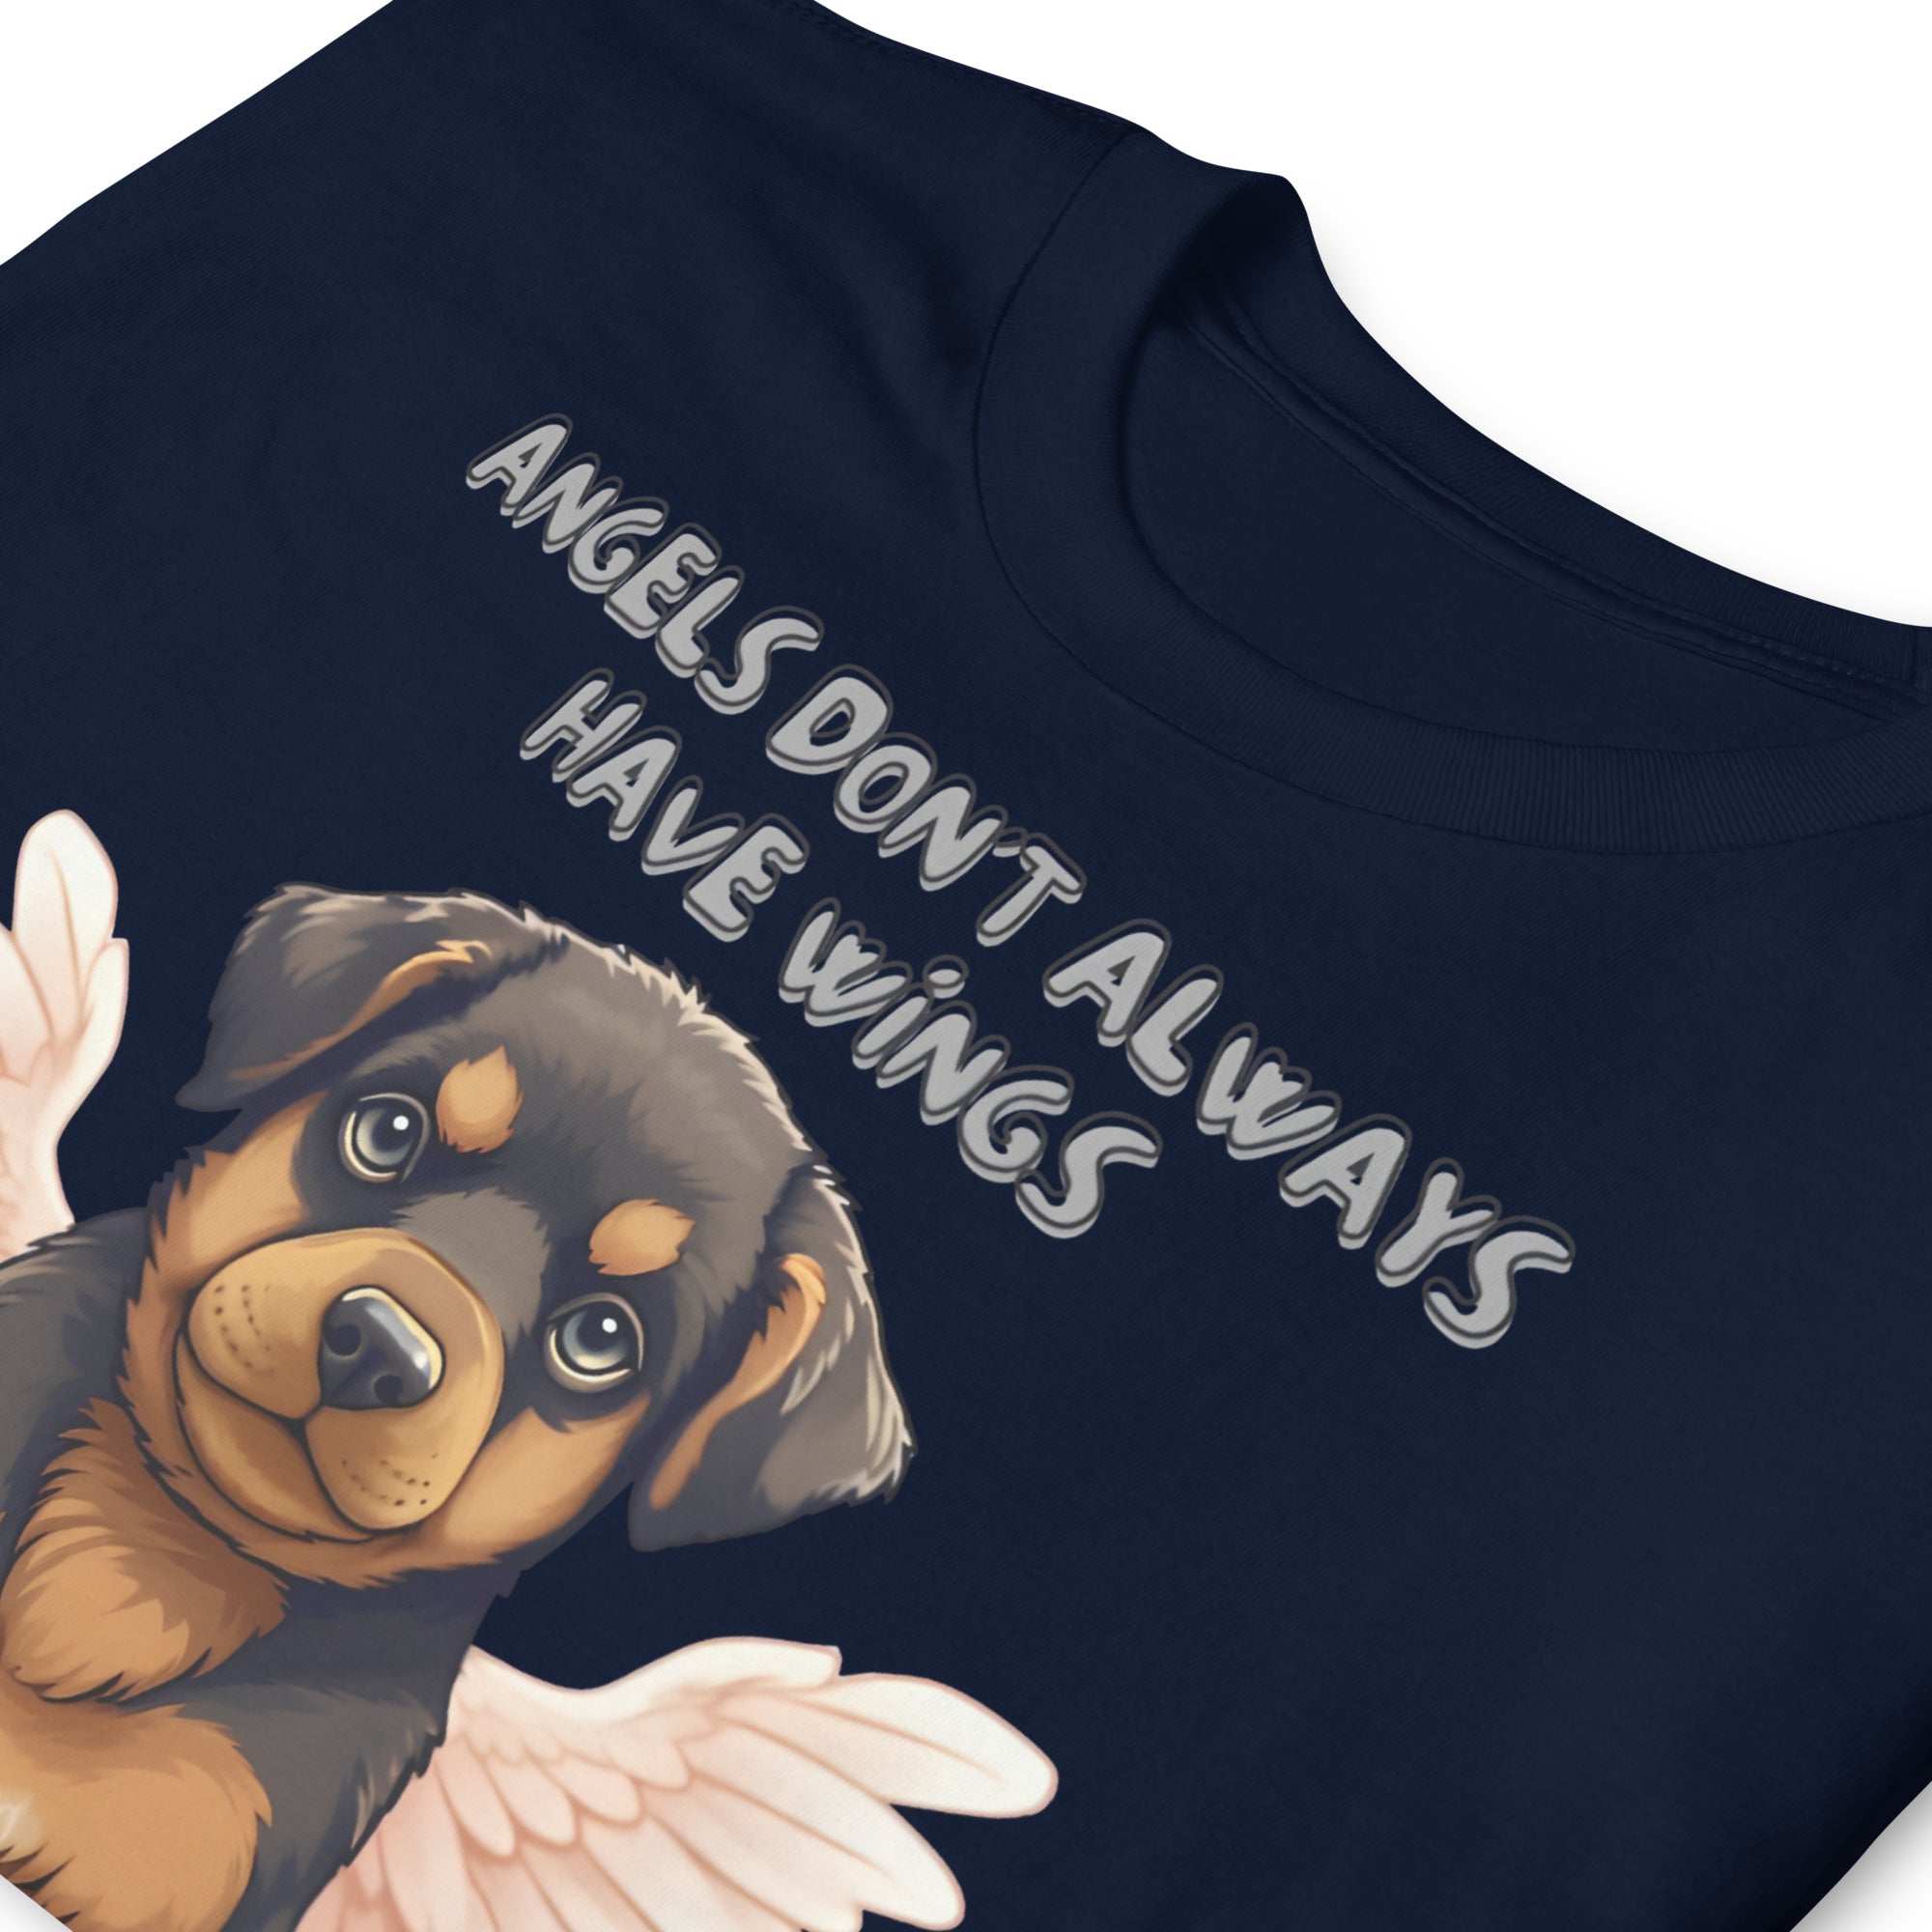 Pet Memorial | Angel Rottweiler Unisex T-Shirt